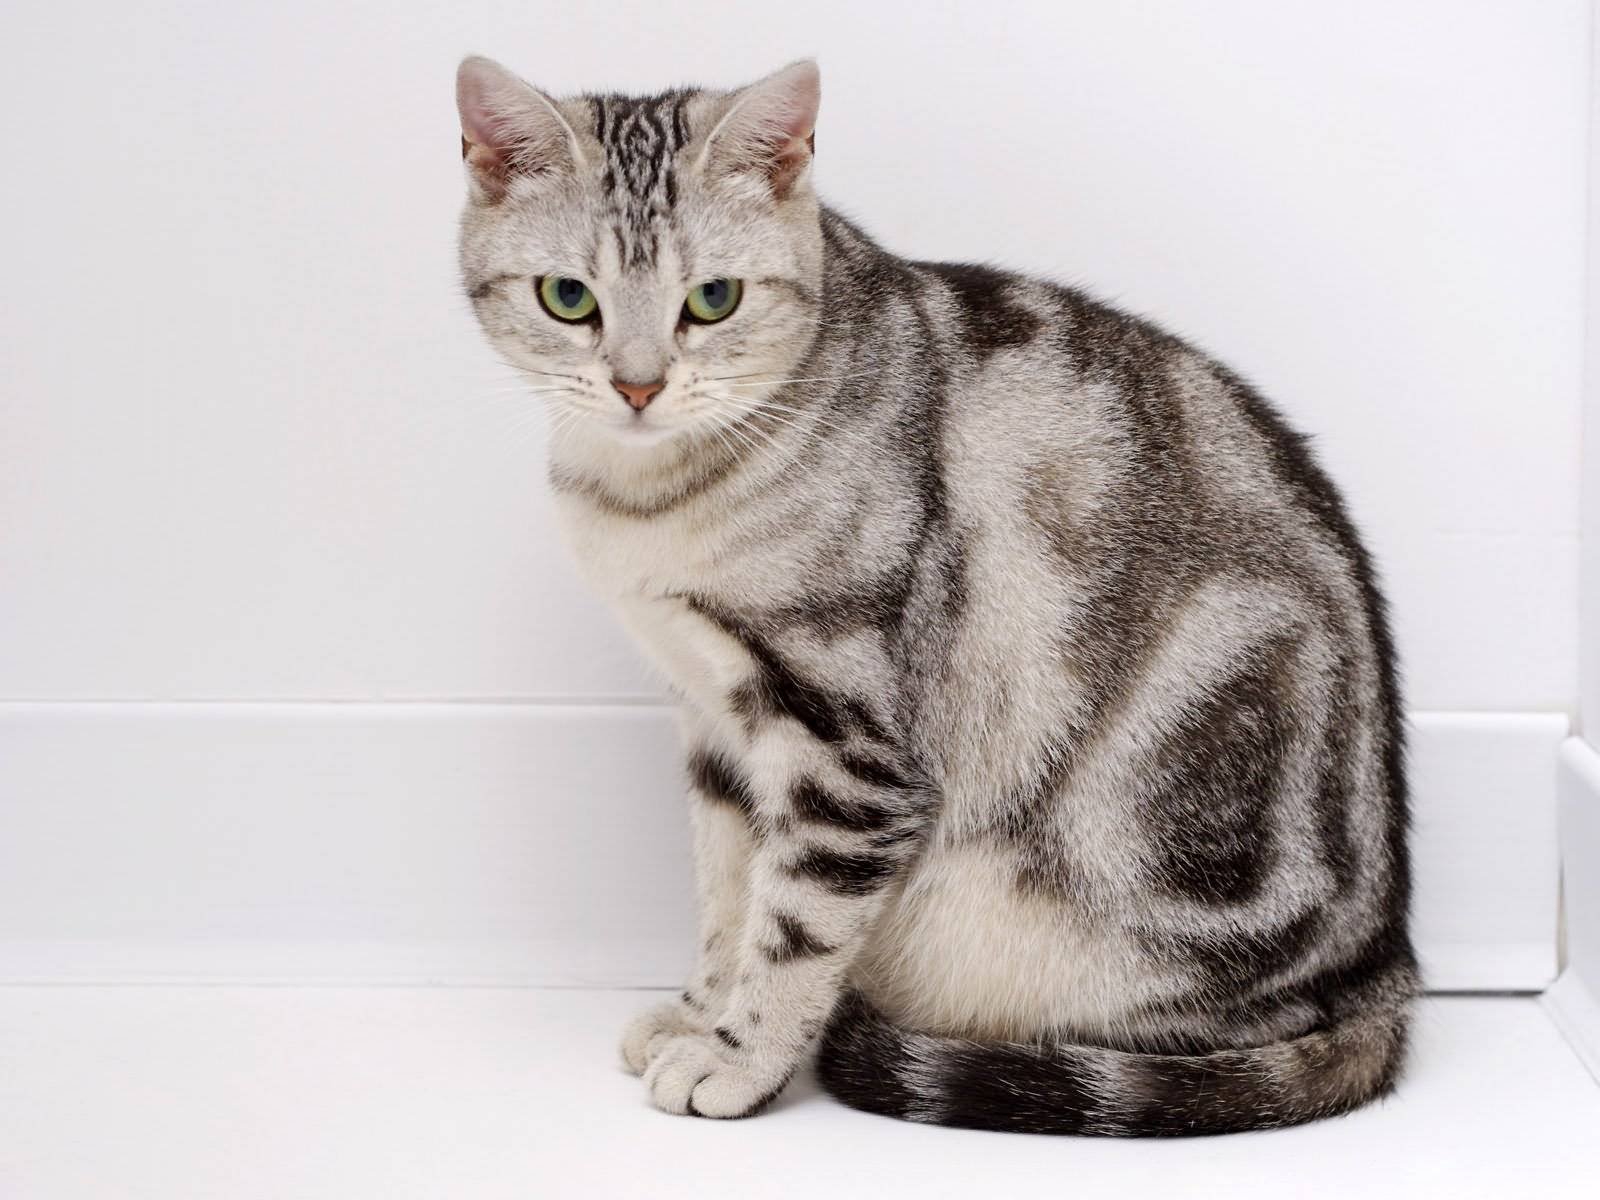 Мраморный табби европейская короткошерстная. Американская короткошерстная кошка табби. Британская короткошёрстная кошка табби. Мраморный Мэнкс табби. Серая кошка с полосками